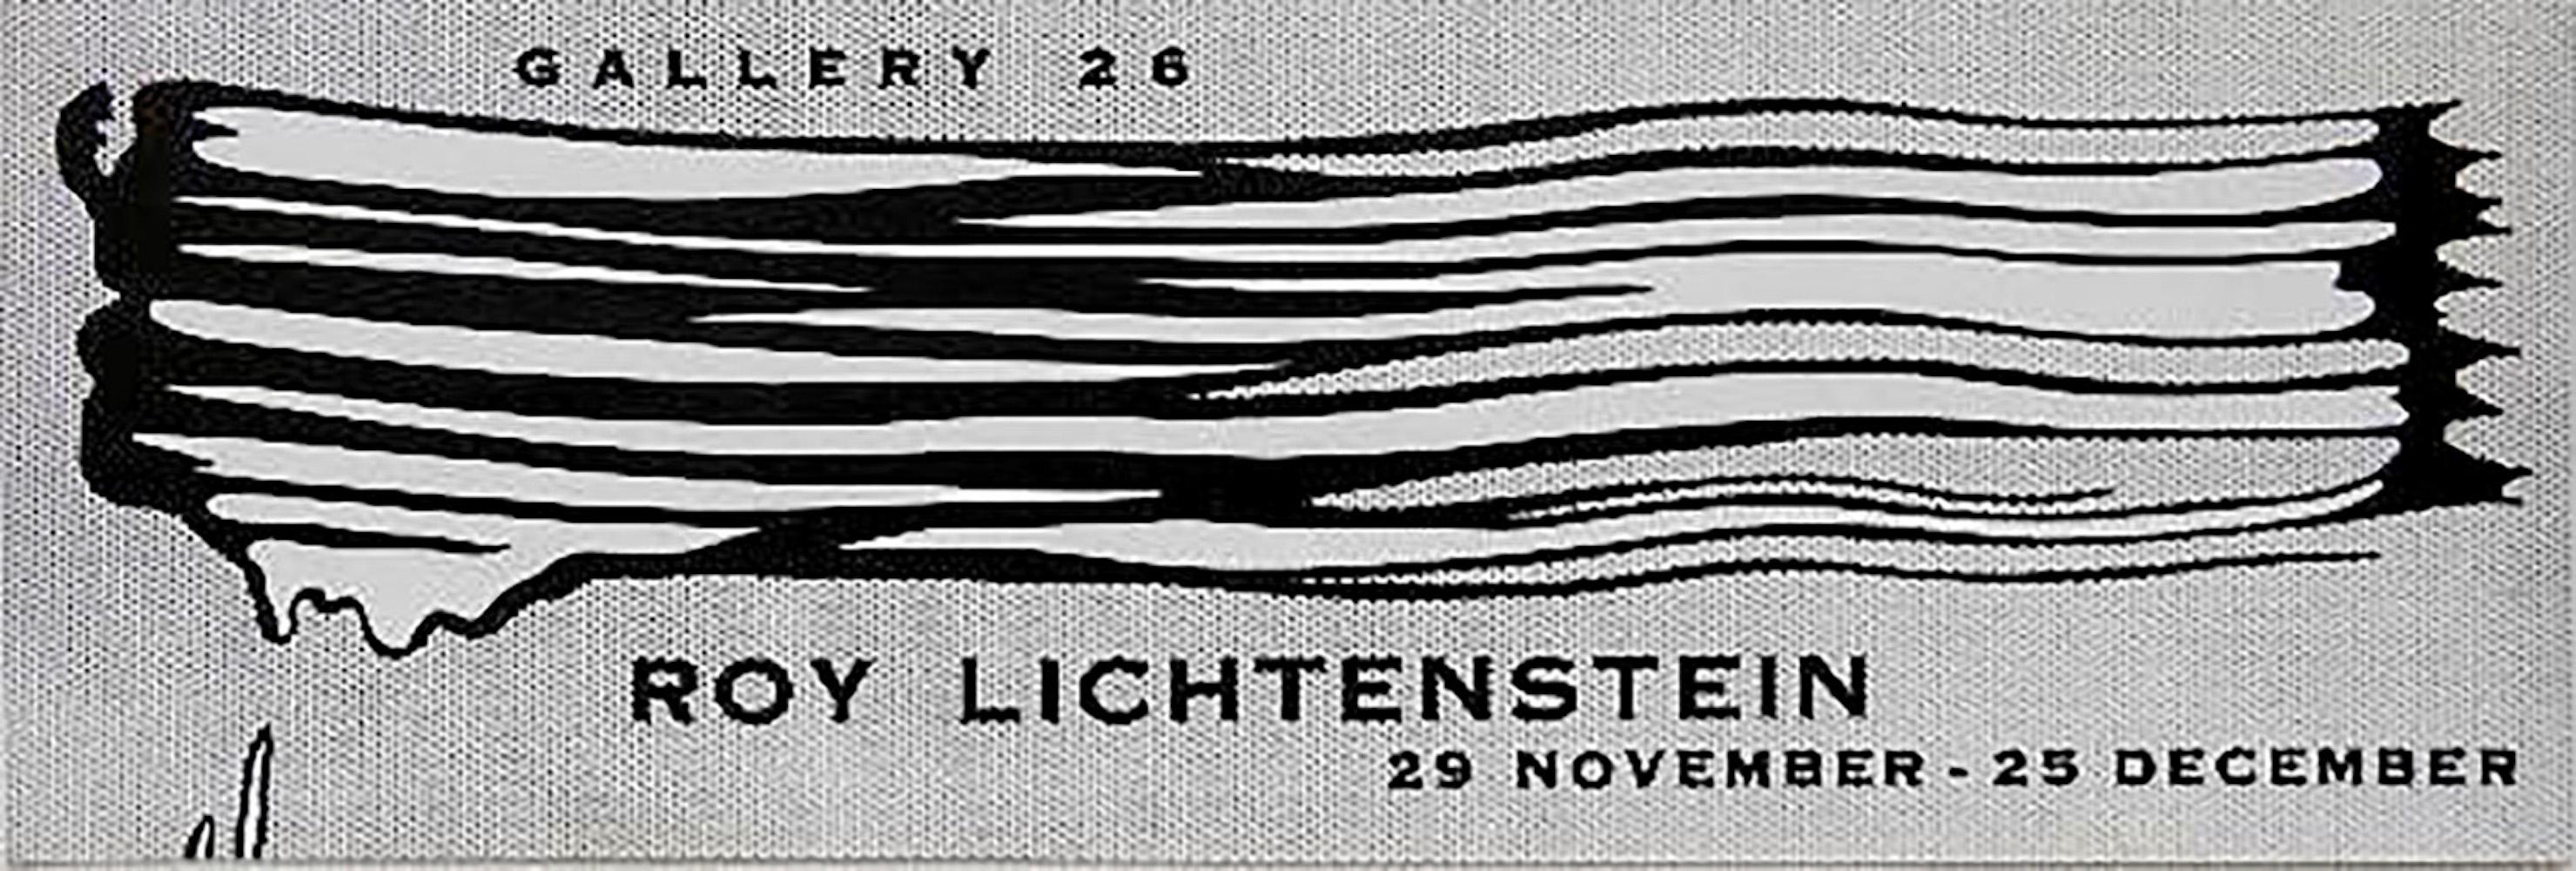 Galerie 26 Ausstellungsplakat – Print von Roy Lichtenstein